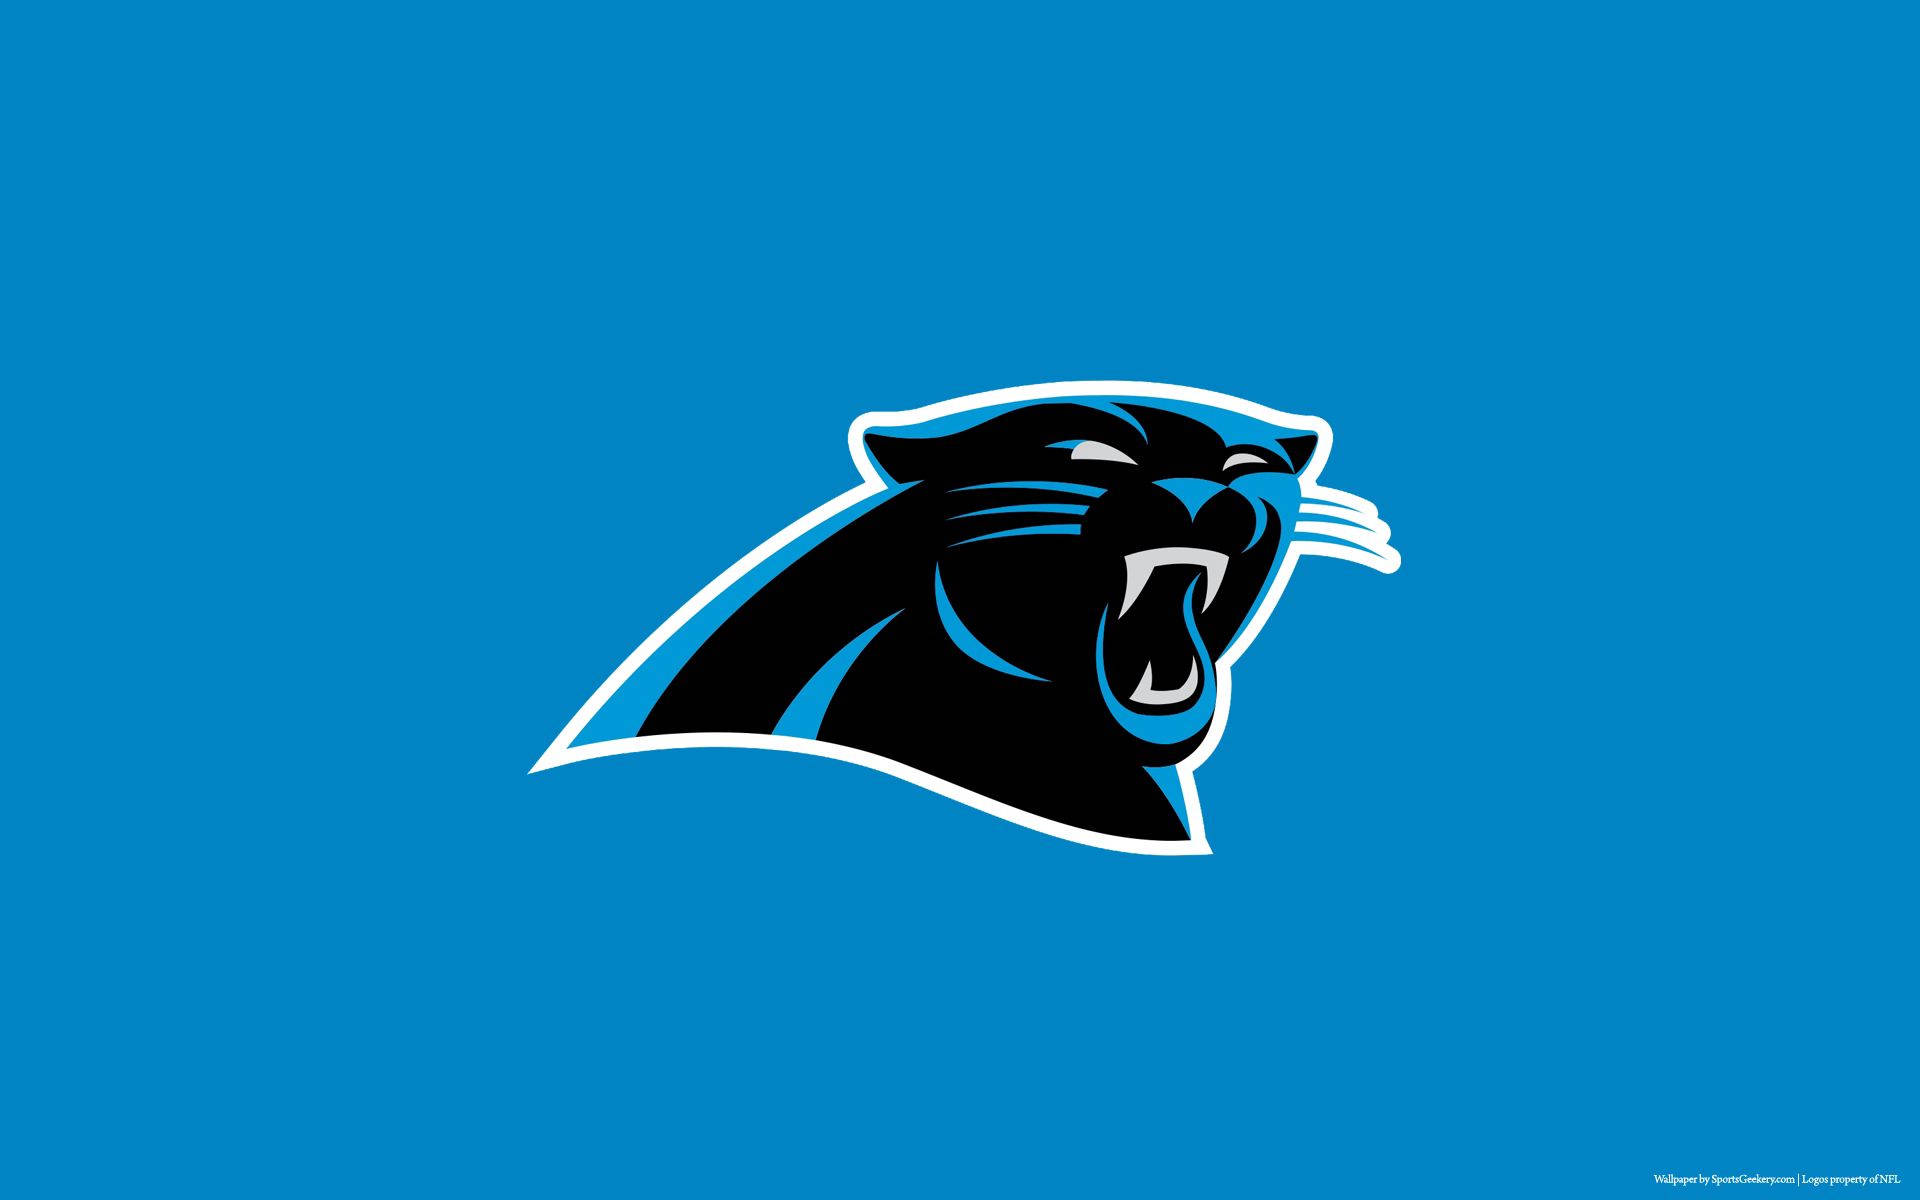 Top 999+ Carolina Panthers Wallpaper Full HD, 4K✅Free to Use